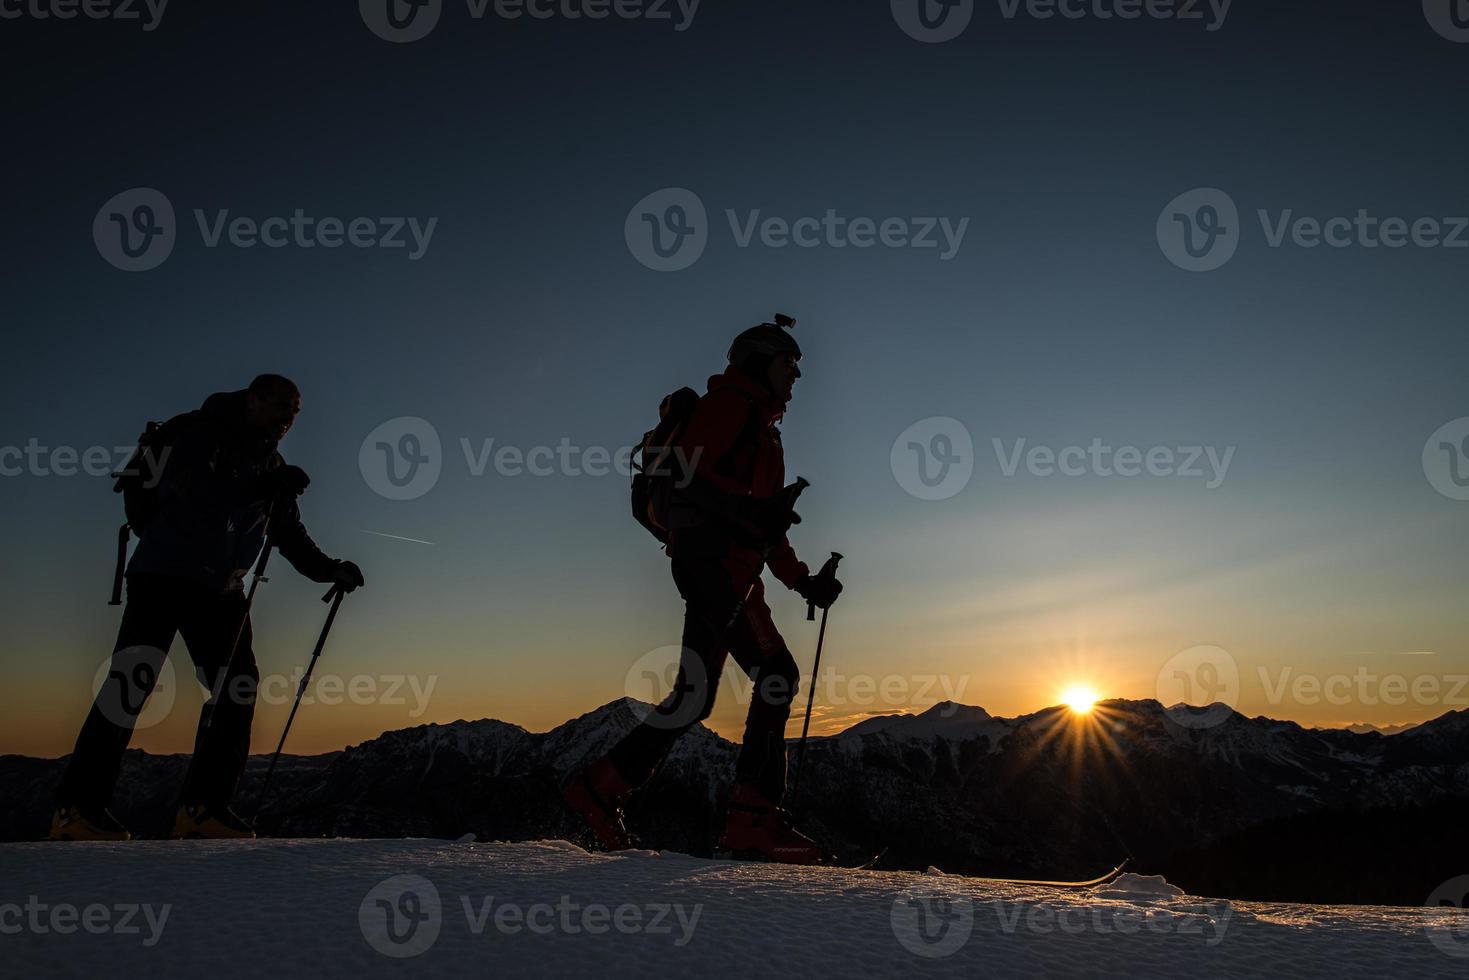 les alpinistes de ski escaladent les montagnes avec le ski le soir au soleil photo